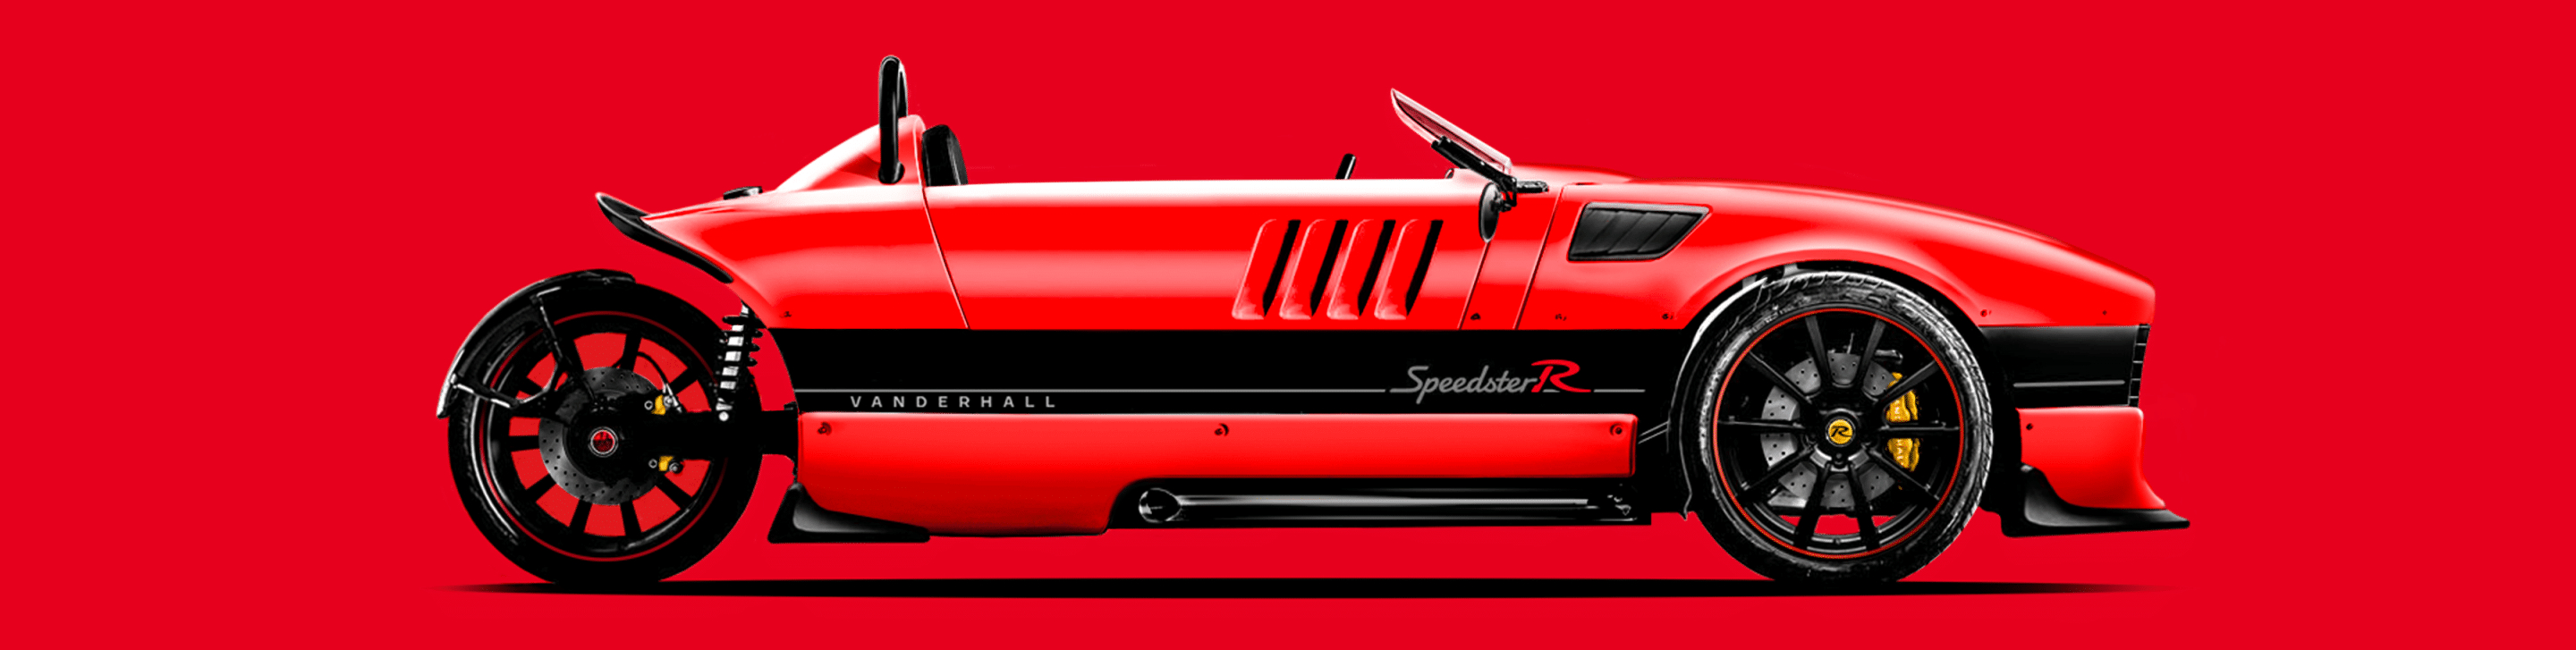 Vanderhall Speedster R